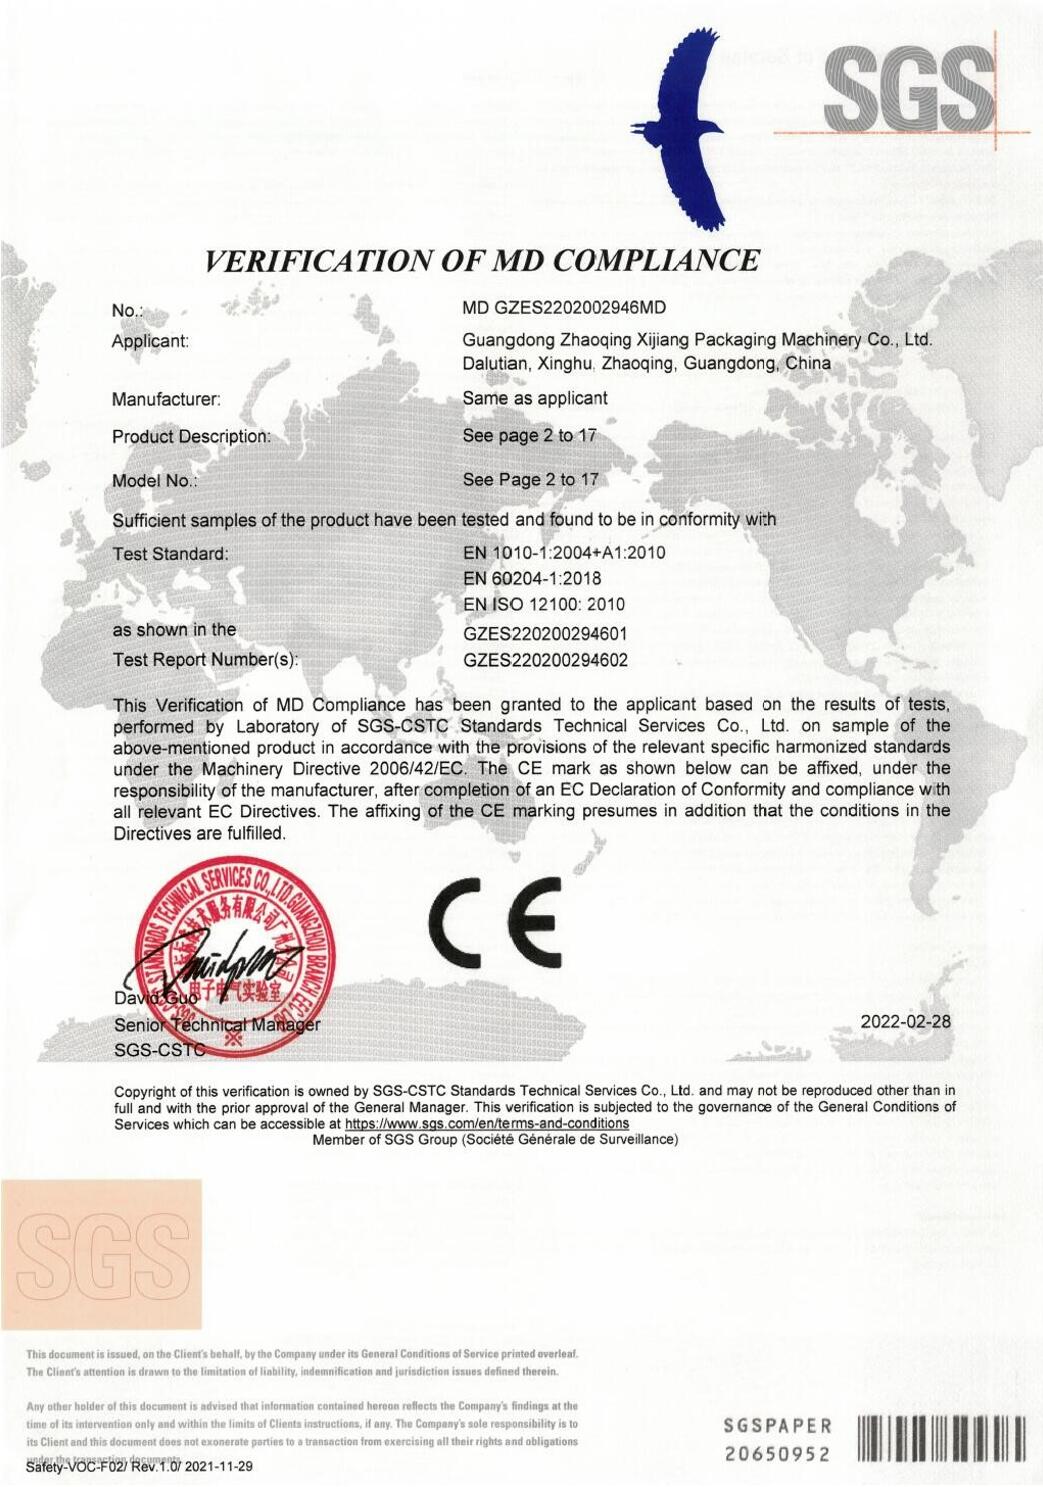 сертификат СЕ
